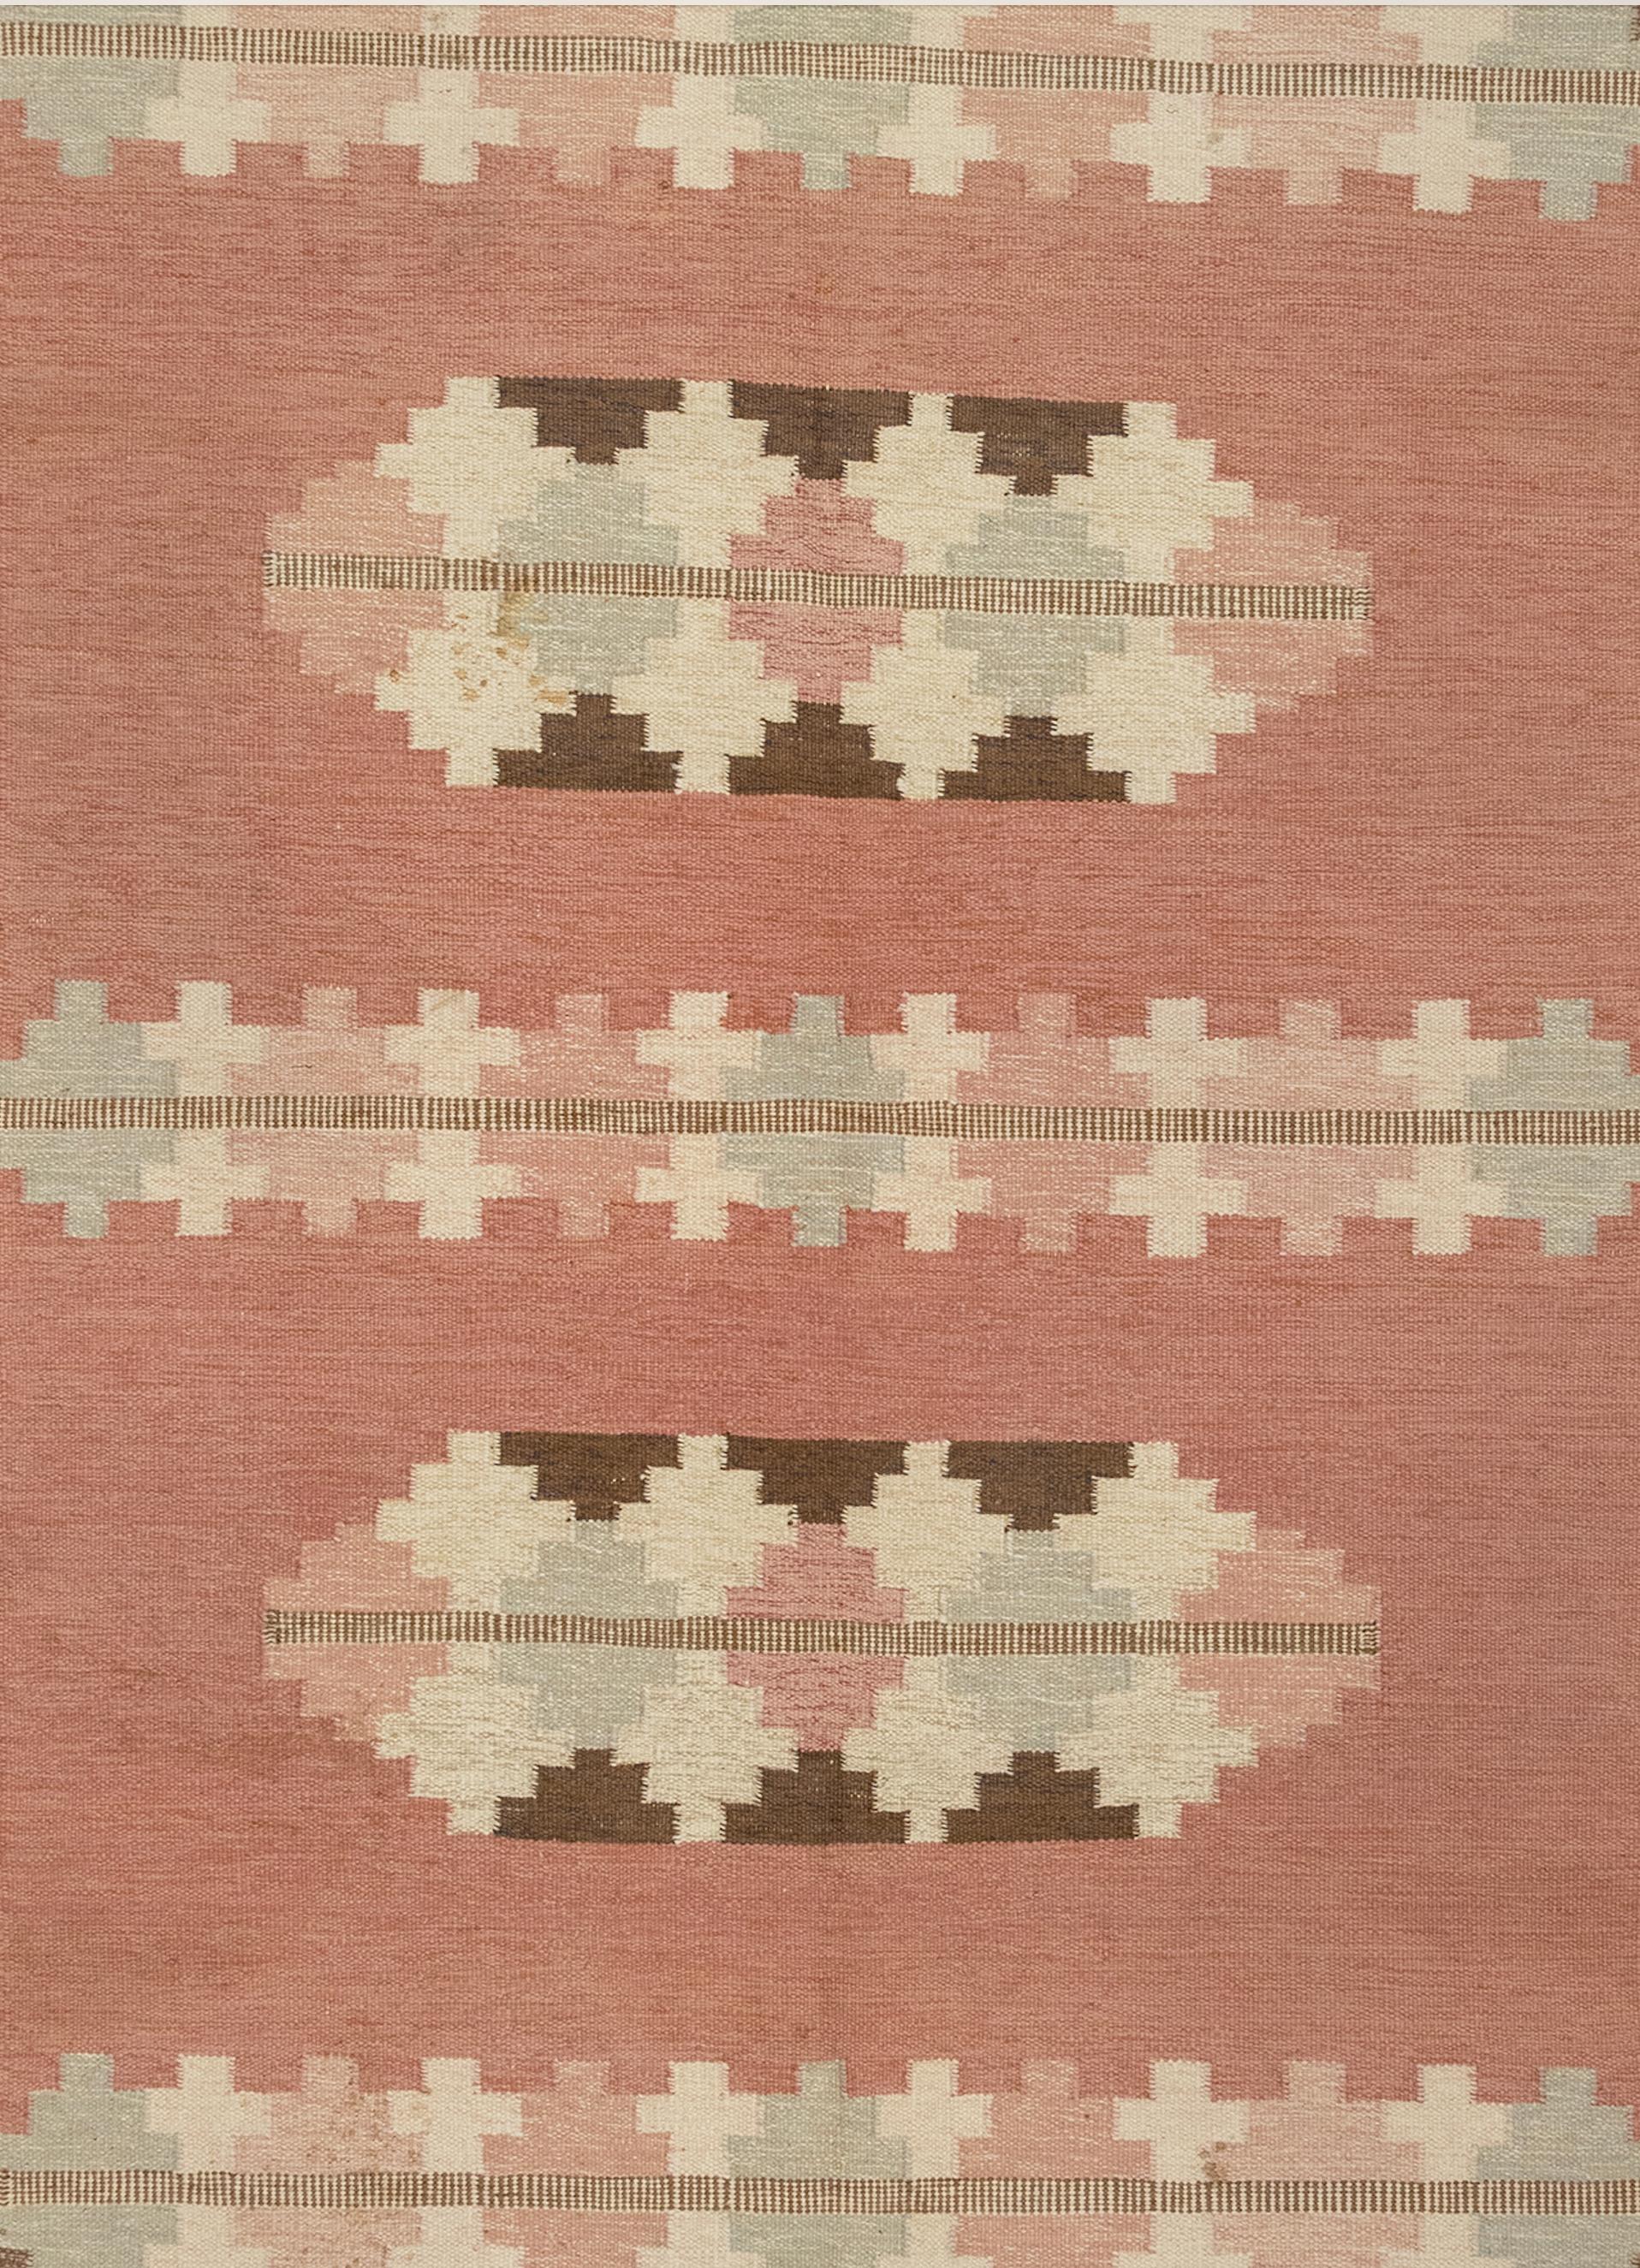 Il s'agit d'un tapis scandinave tissé à plat datant du milieu du 20e siècle. Il est signé par le concepteur. La palette de couleurs comprend des nuances douces de rose, de bleu glacé, d'ivoire et de brun dans des formes géométriques complémentaires